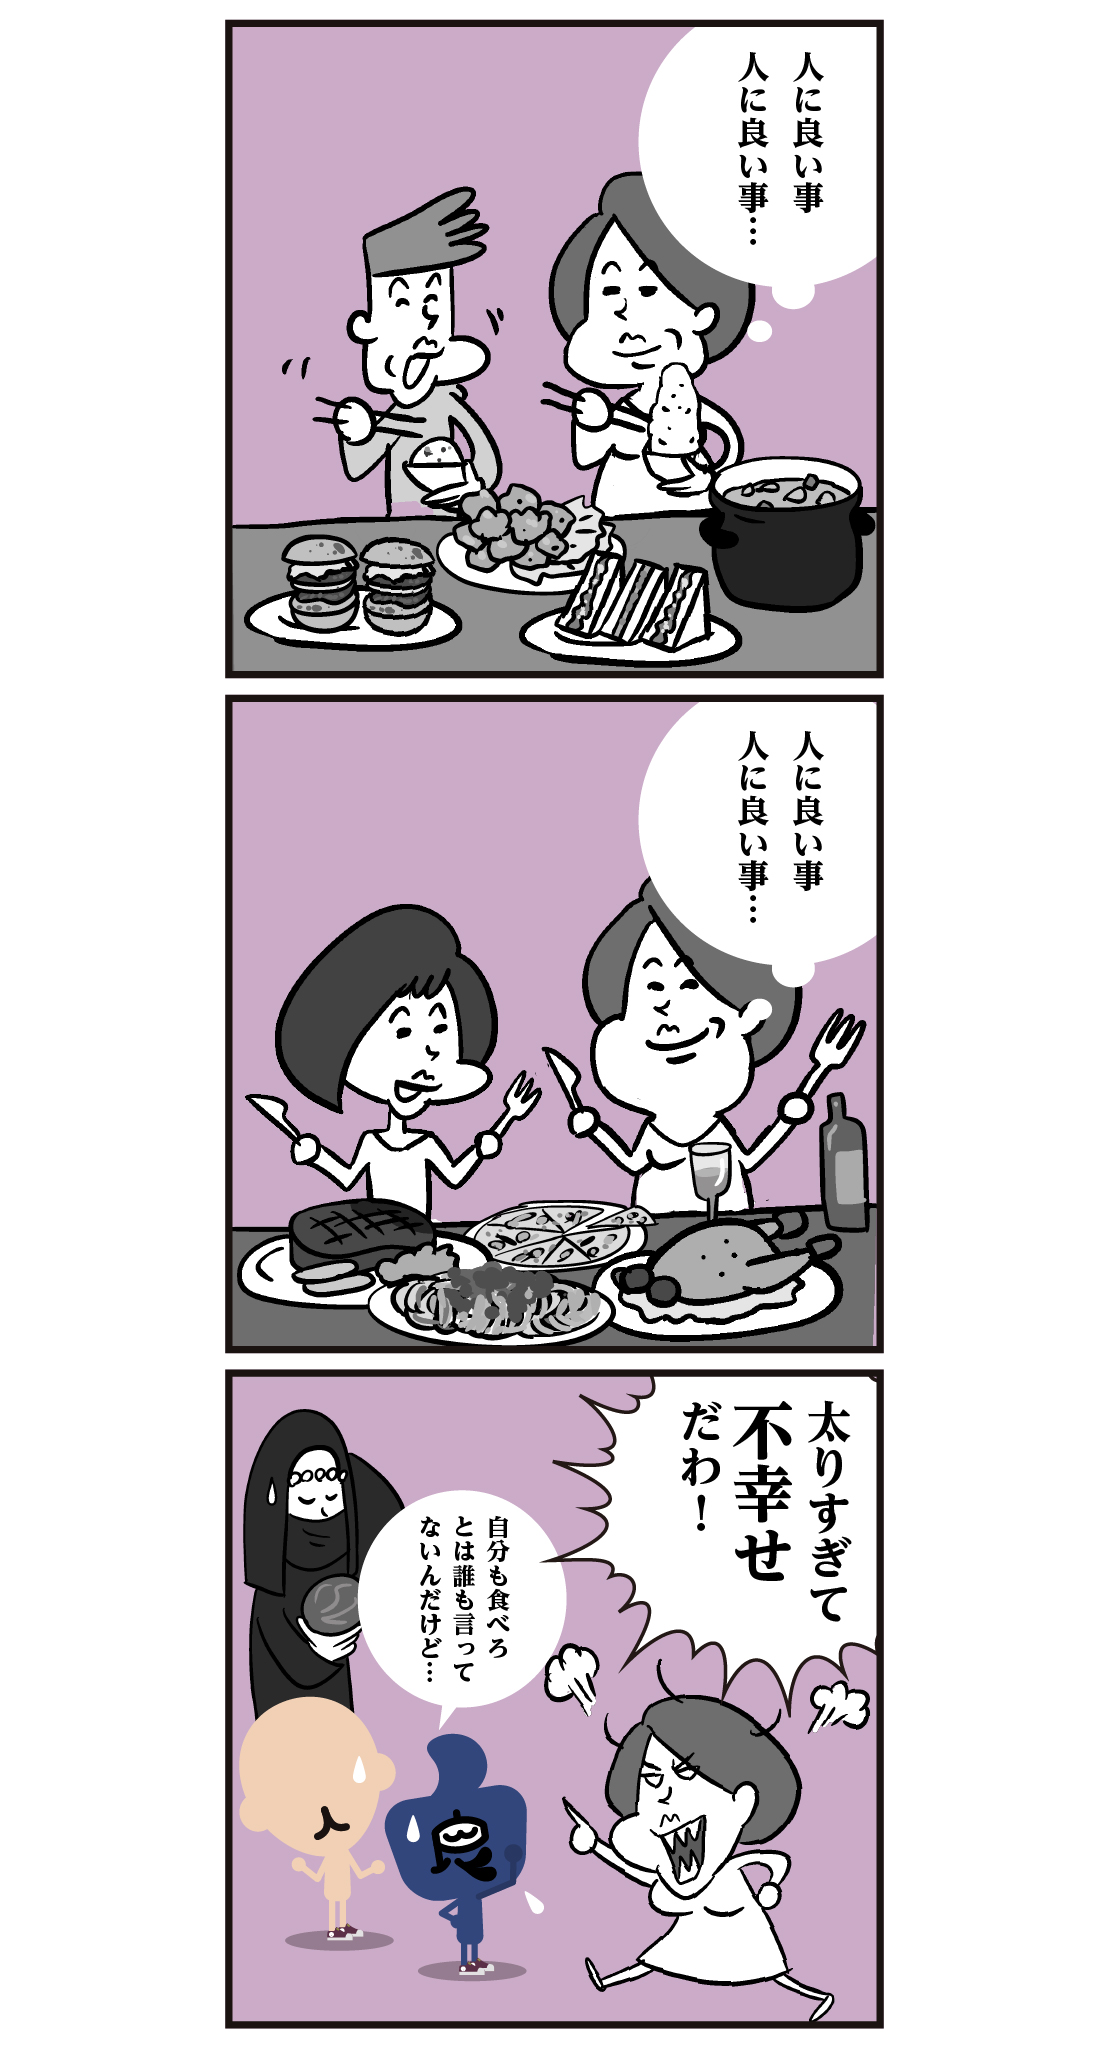 Twitter 上的 かんじもん Kanjimon 人 に 良 い 事 食事 という成り立ちではありません 食という文字の 成り立ちは 食器の上にふたがのっている形の象形文字だそうです 漢字 漫画 イラスト 食事 T Co Djlx1y0kr8 Twitter